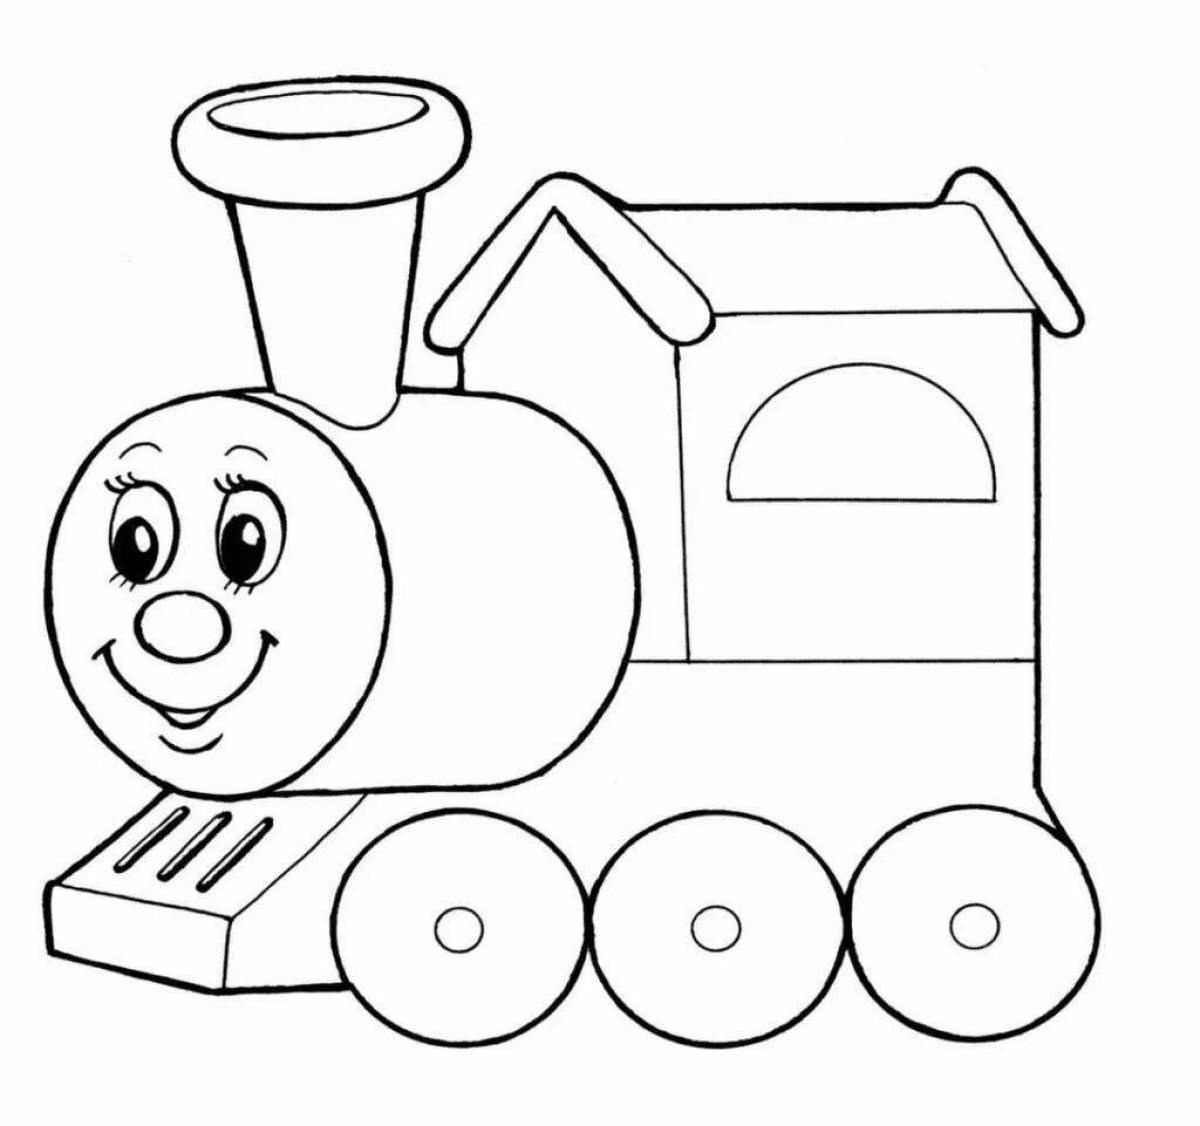 Baby steam locomotive #1